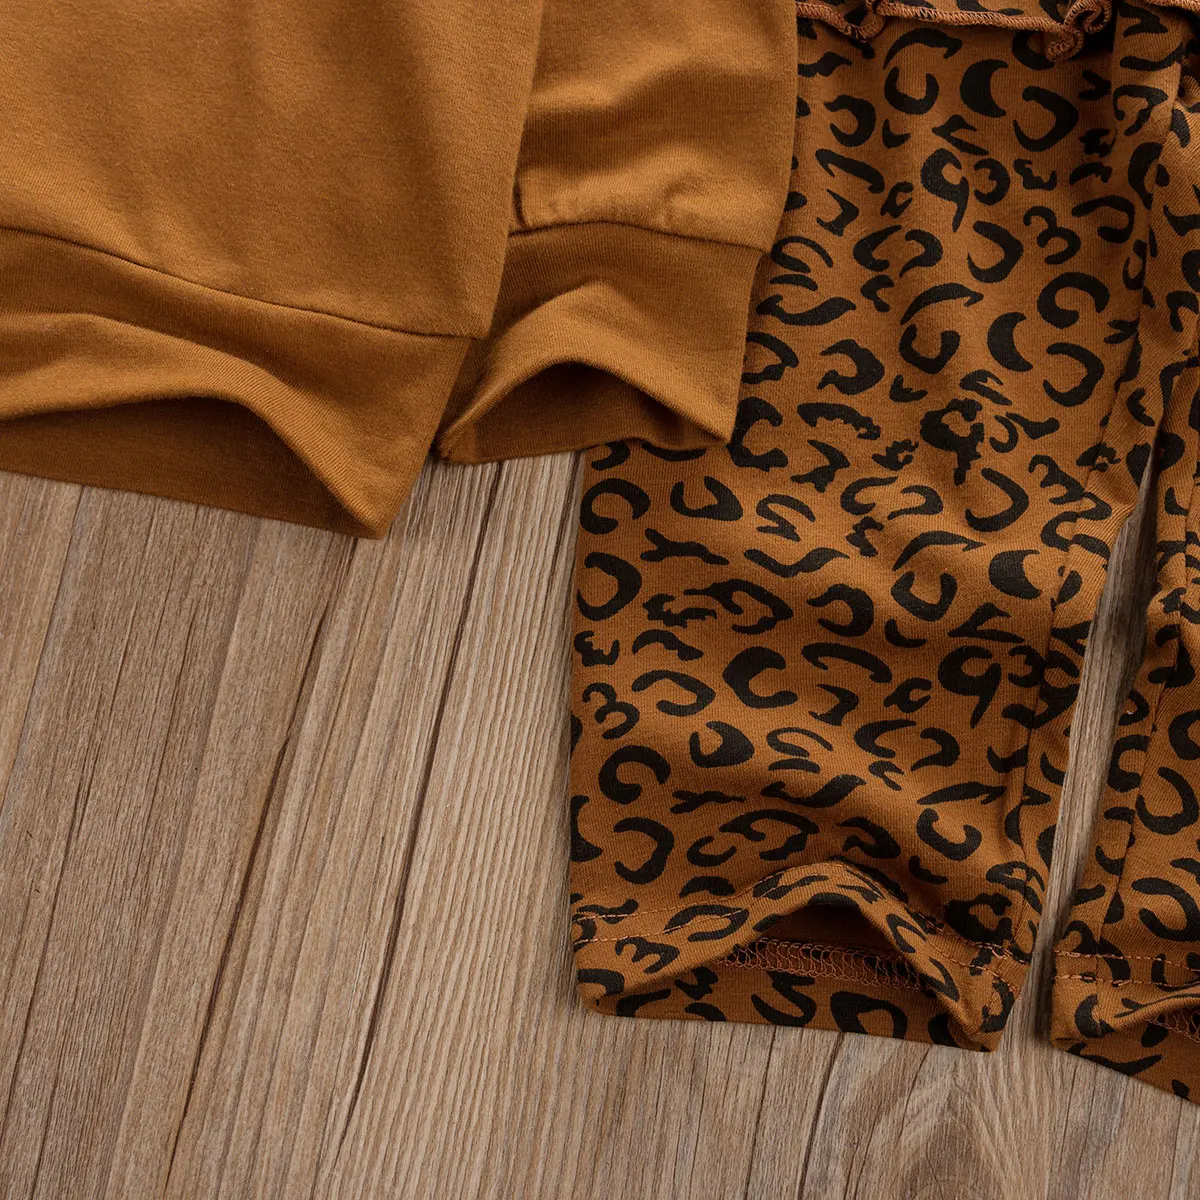 От 1 до 6 лет одежда с леопардовым принтом для маленьких девочек осенние зимние наборы толстовки с длинными рукавами штаны с оборками, спортивный костюм детская одежда для девочек